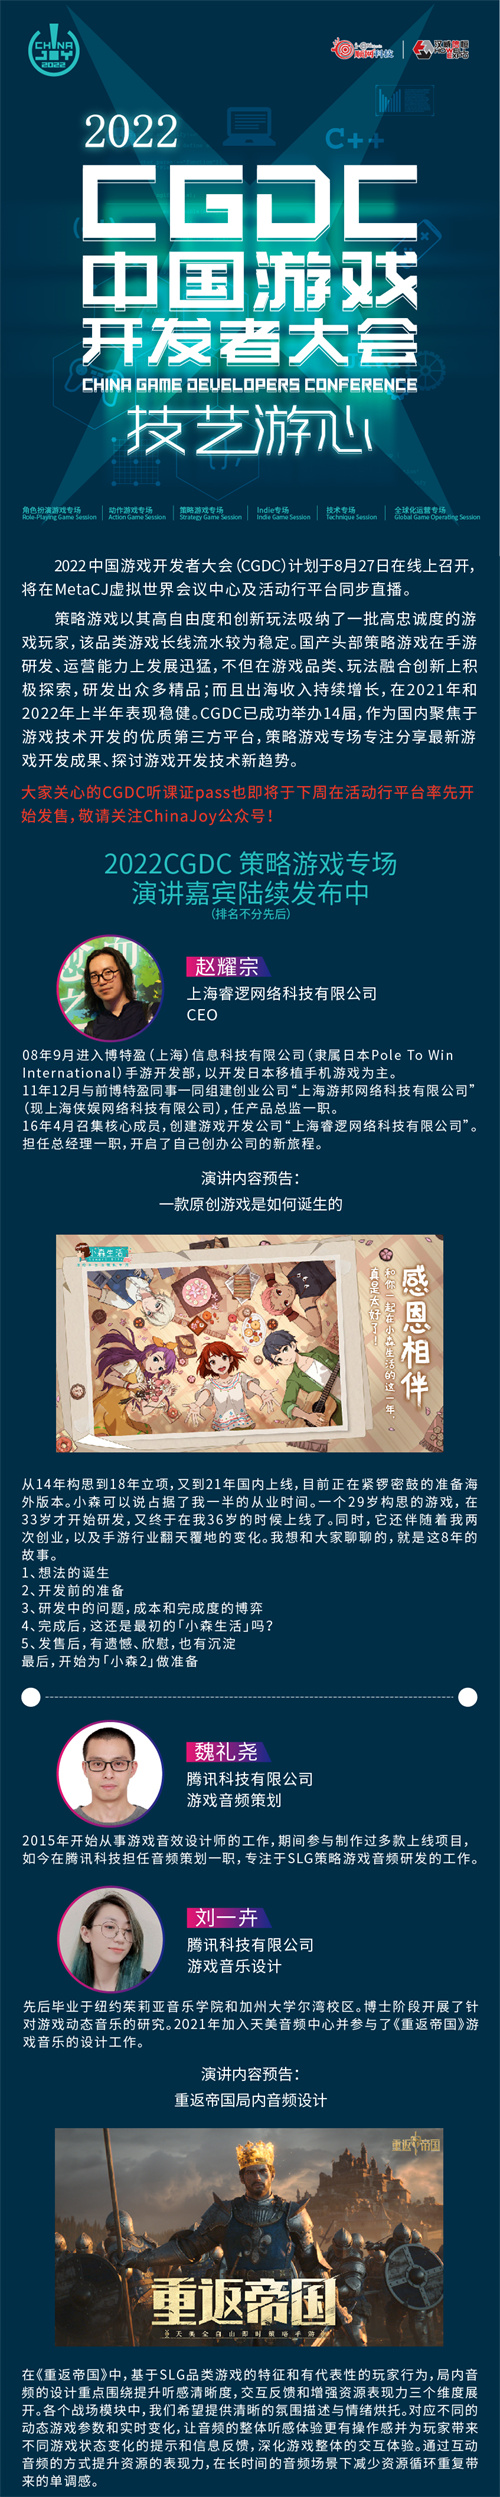 2022中国游戏开发者大会(CGDC)策略游戏专场部分嘉宾&话题抢先曝光!